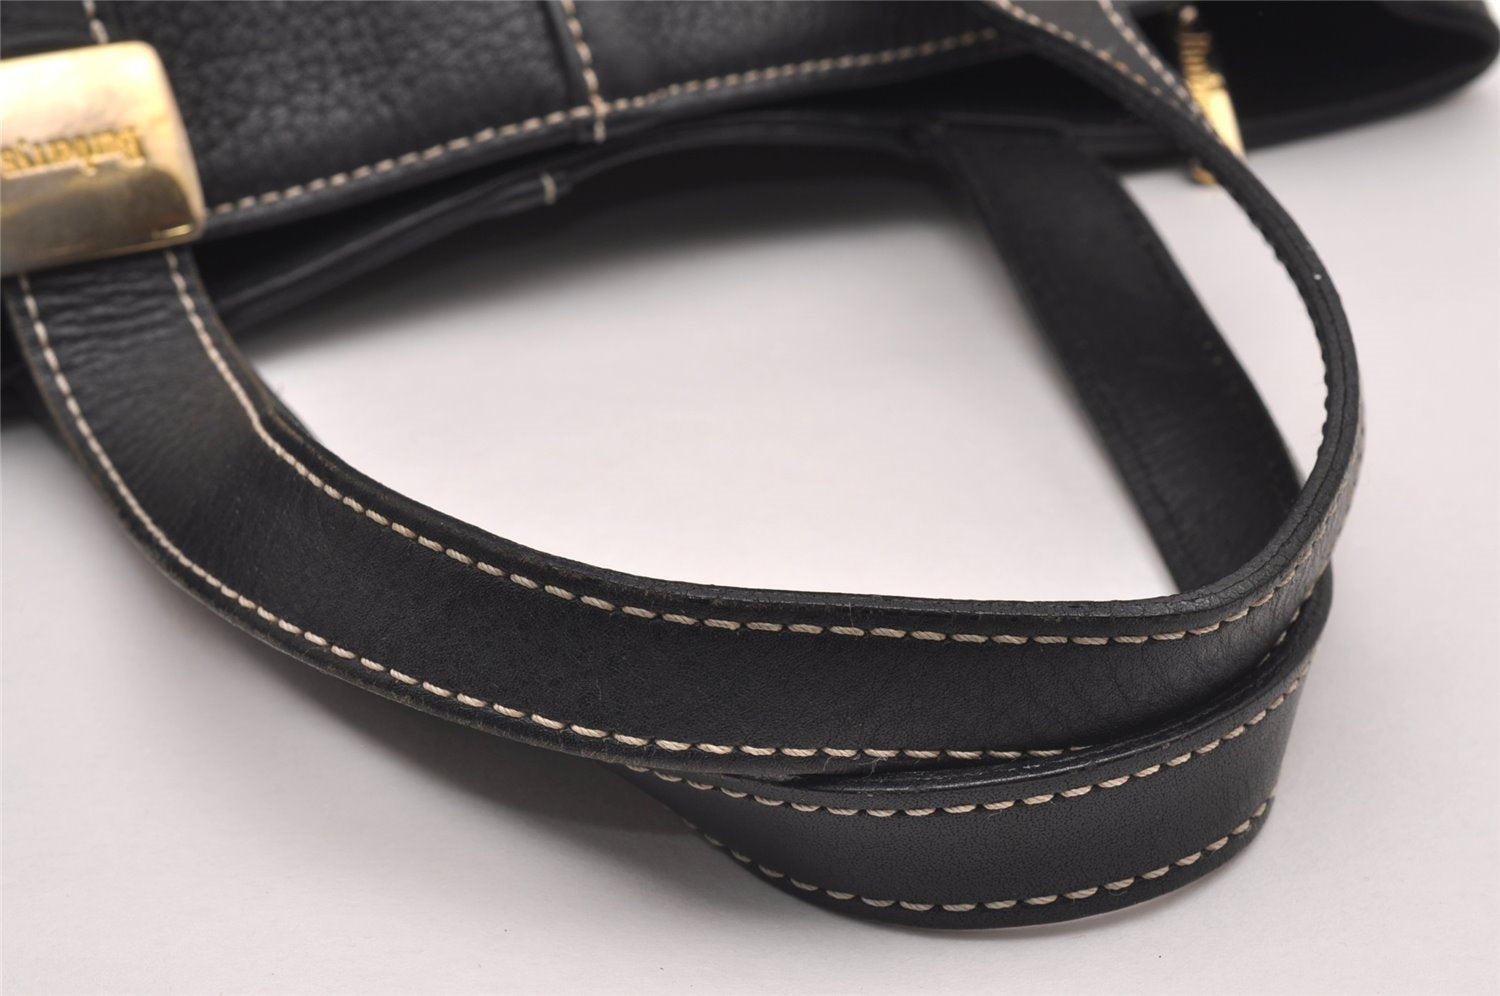 Authentic Burberrys Vintage Leather Shoulder Hand Bag Purse Black 0560J